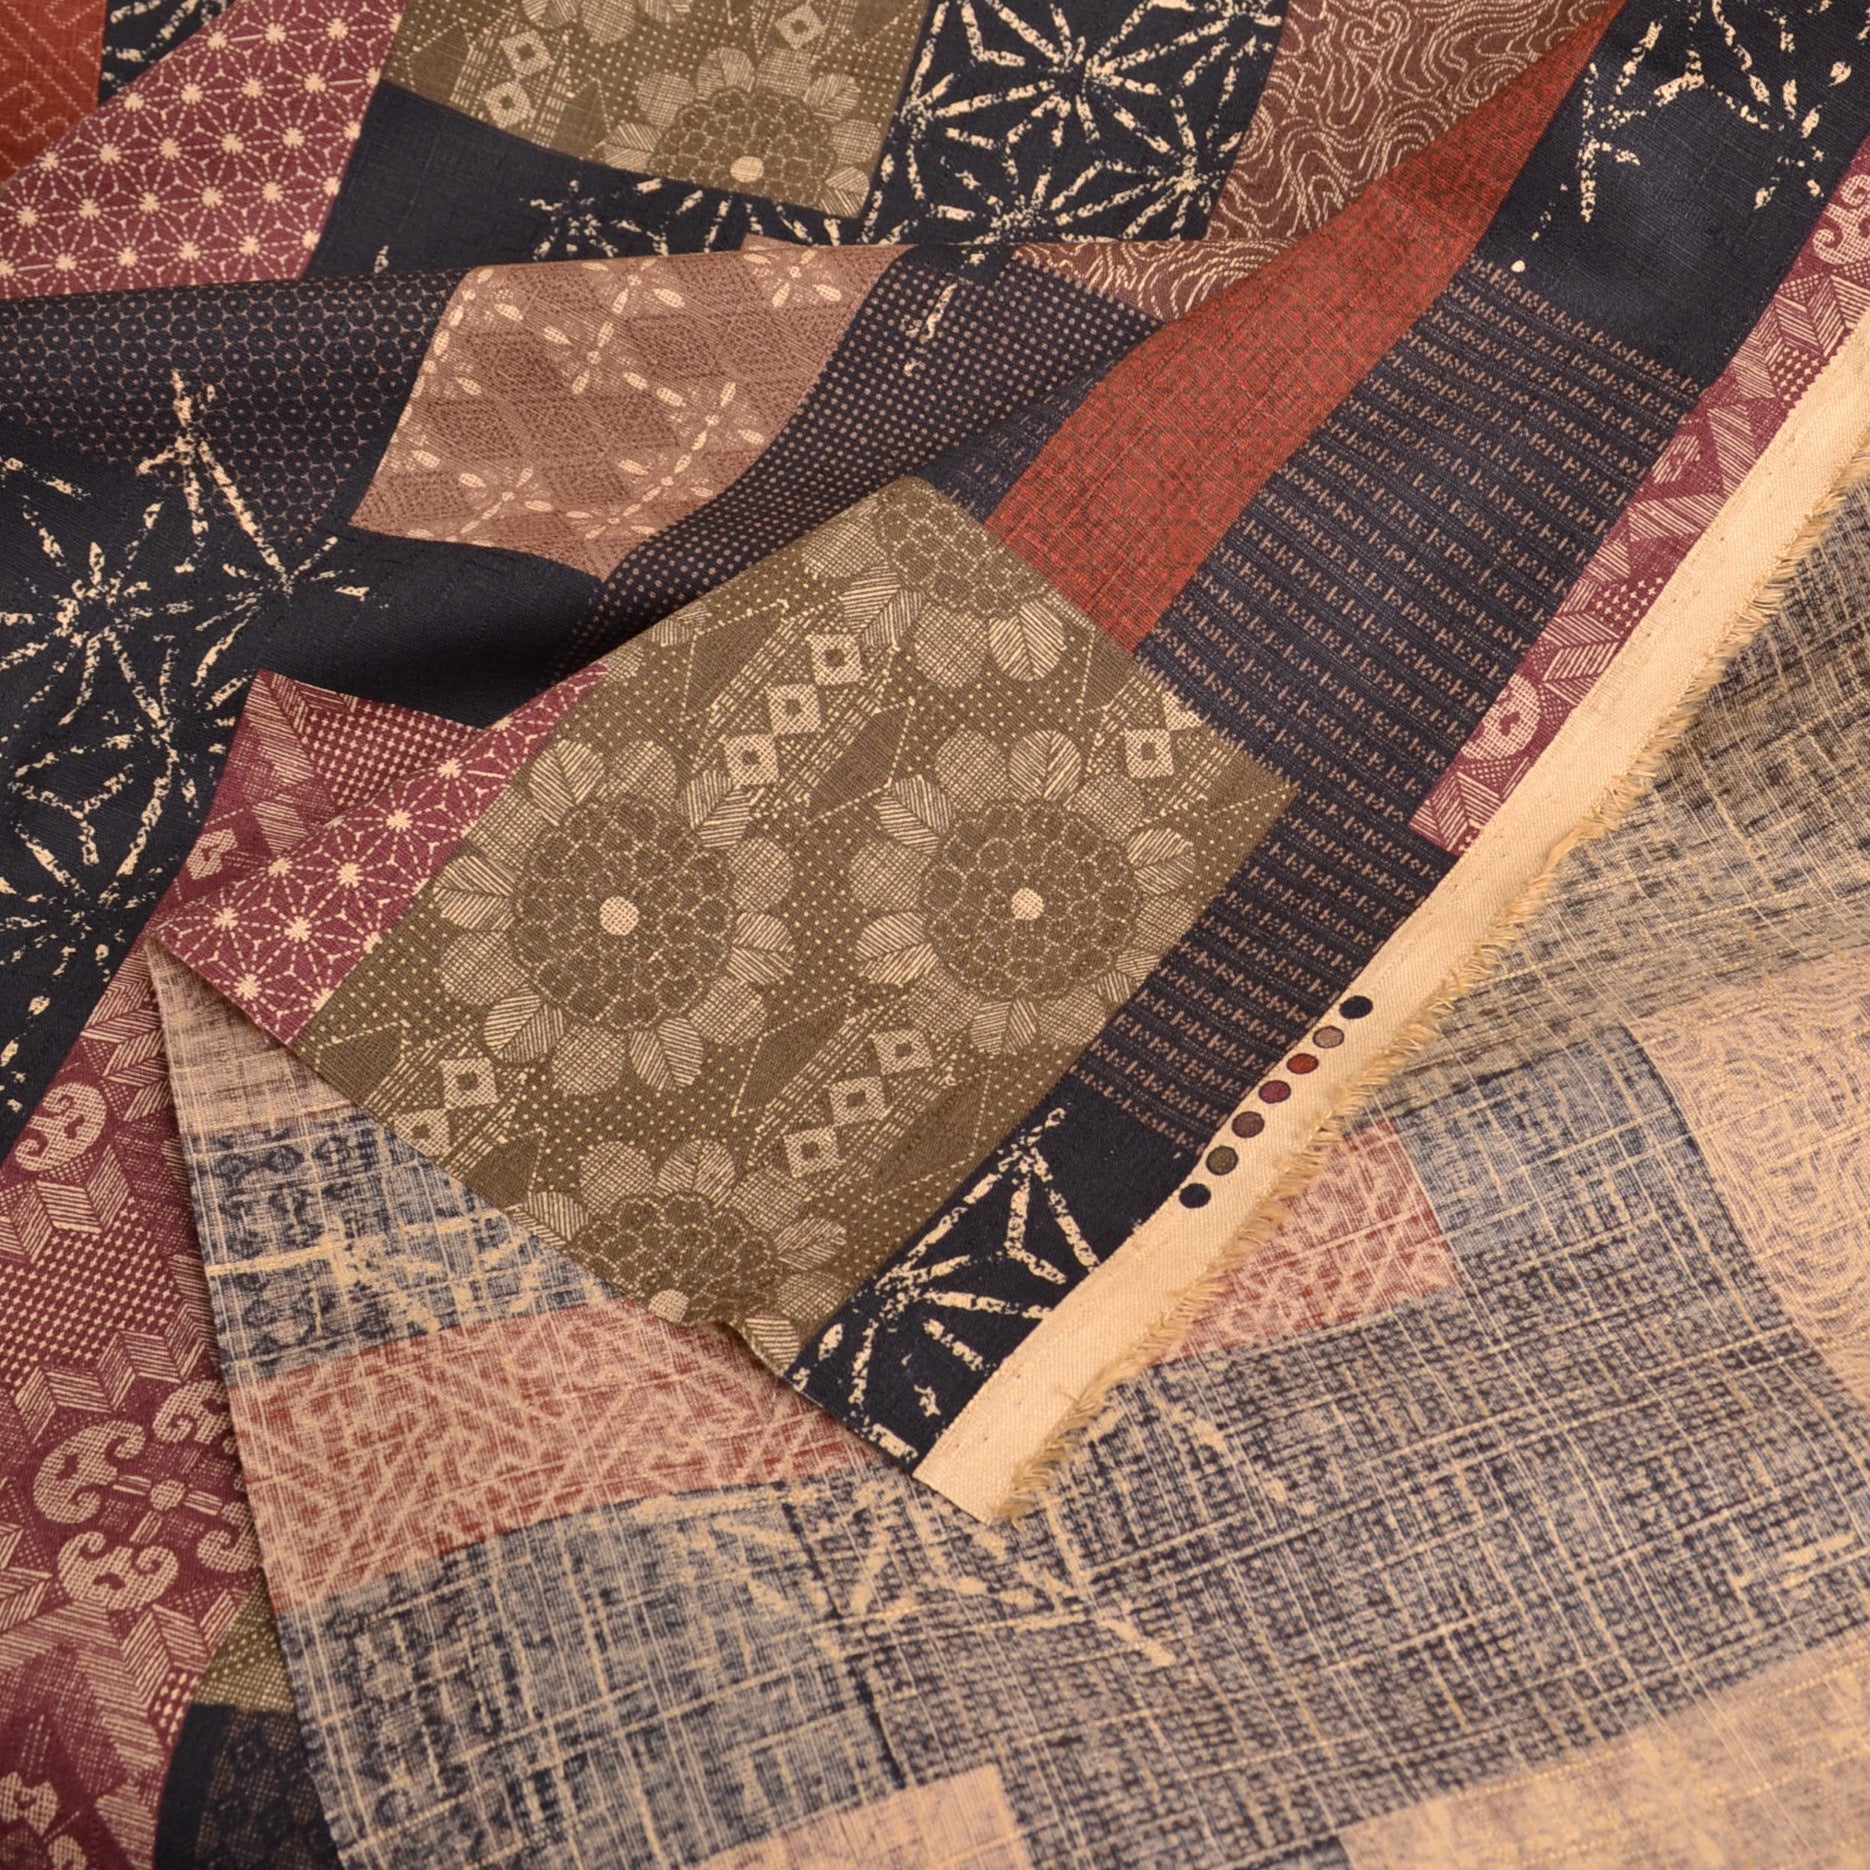 Japanese Sewing Fabric, Morikiku Cotton